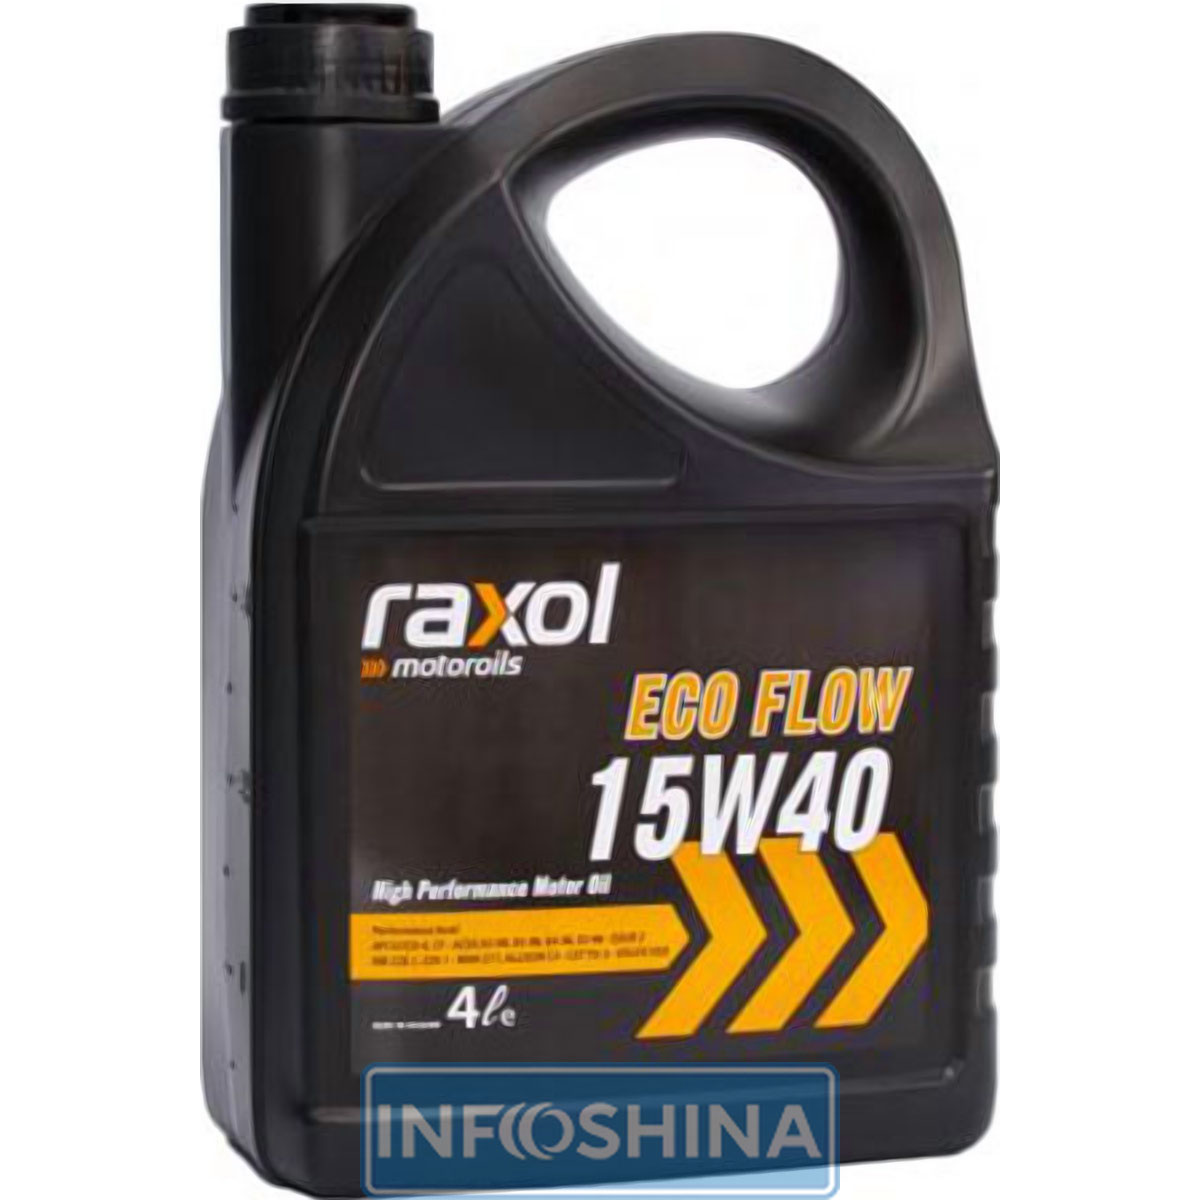 Raxol Eco Flow 15W-40